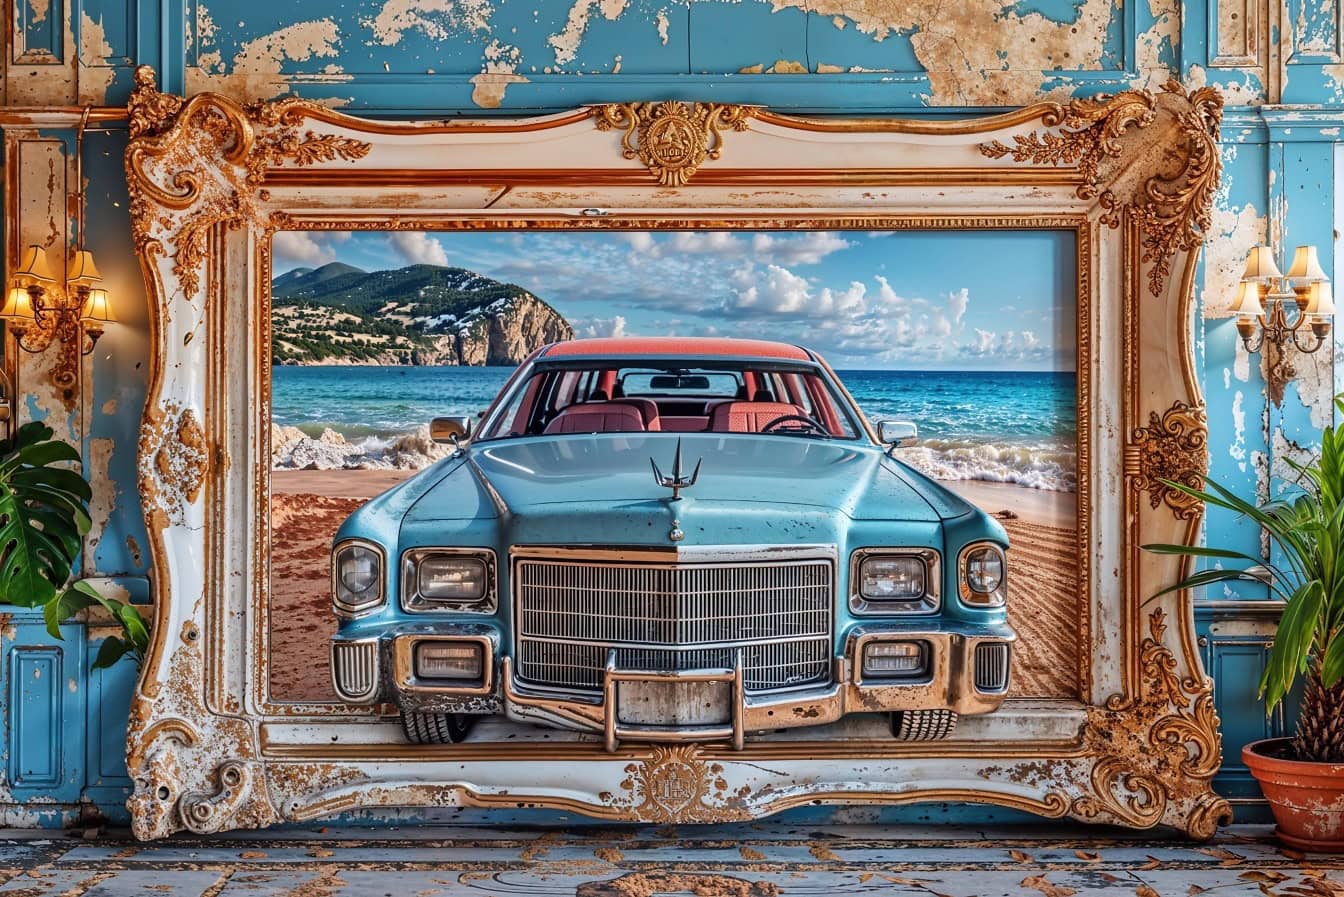 En stor 3D-bild av en klassisk amerikansk Cadillac-bil hänger på en vägg i en gammal viktoriansk ram